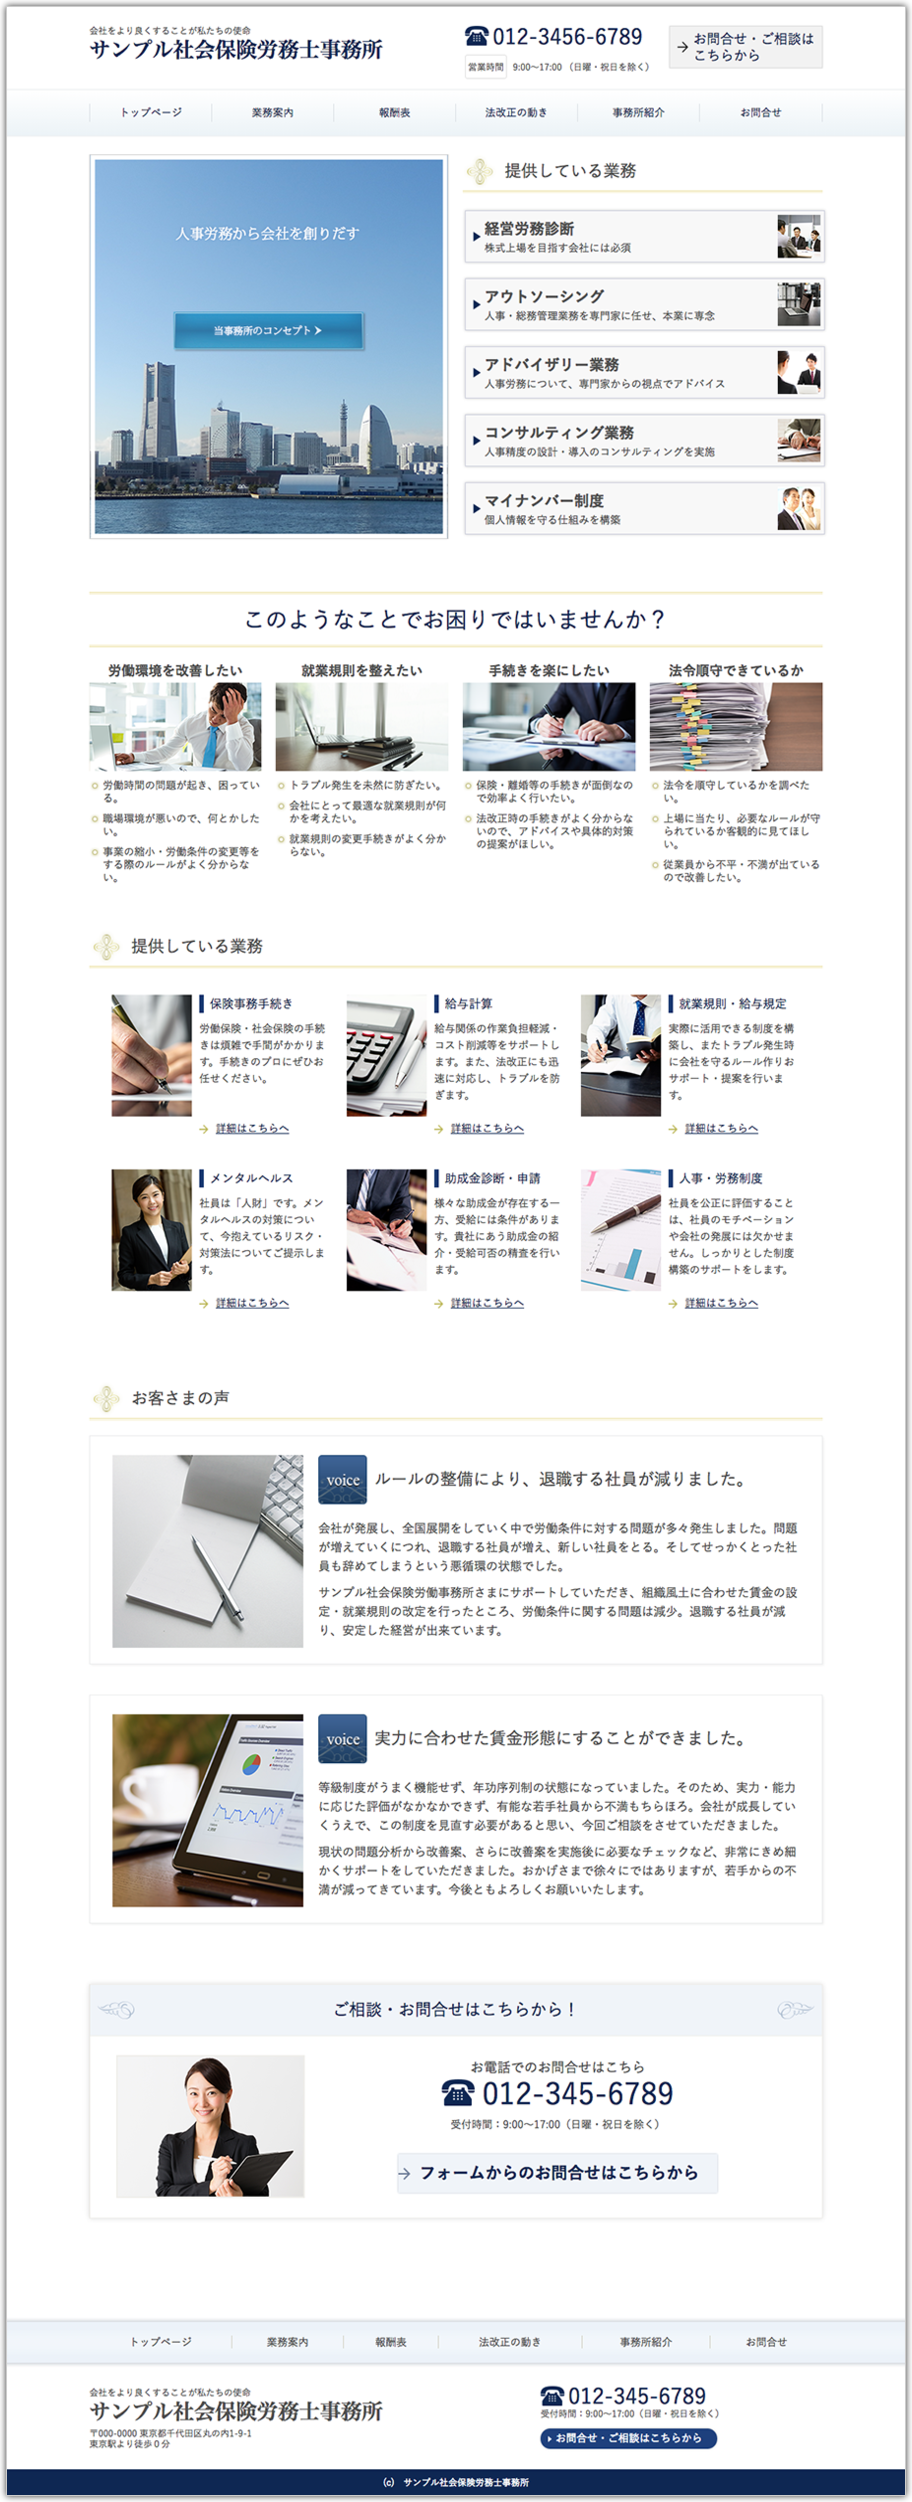 社会保険労務士事務所のホームページデザイン例 B019